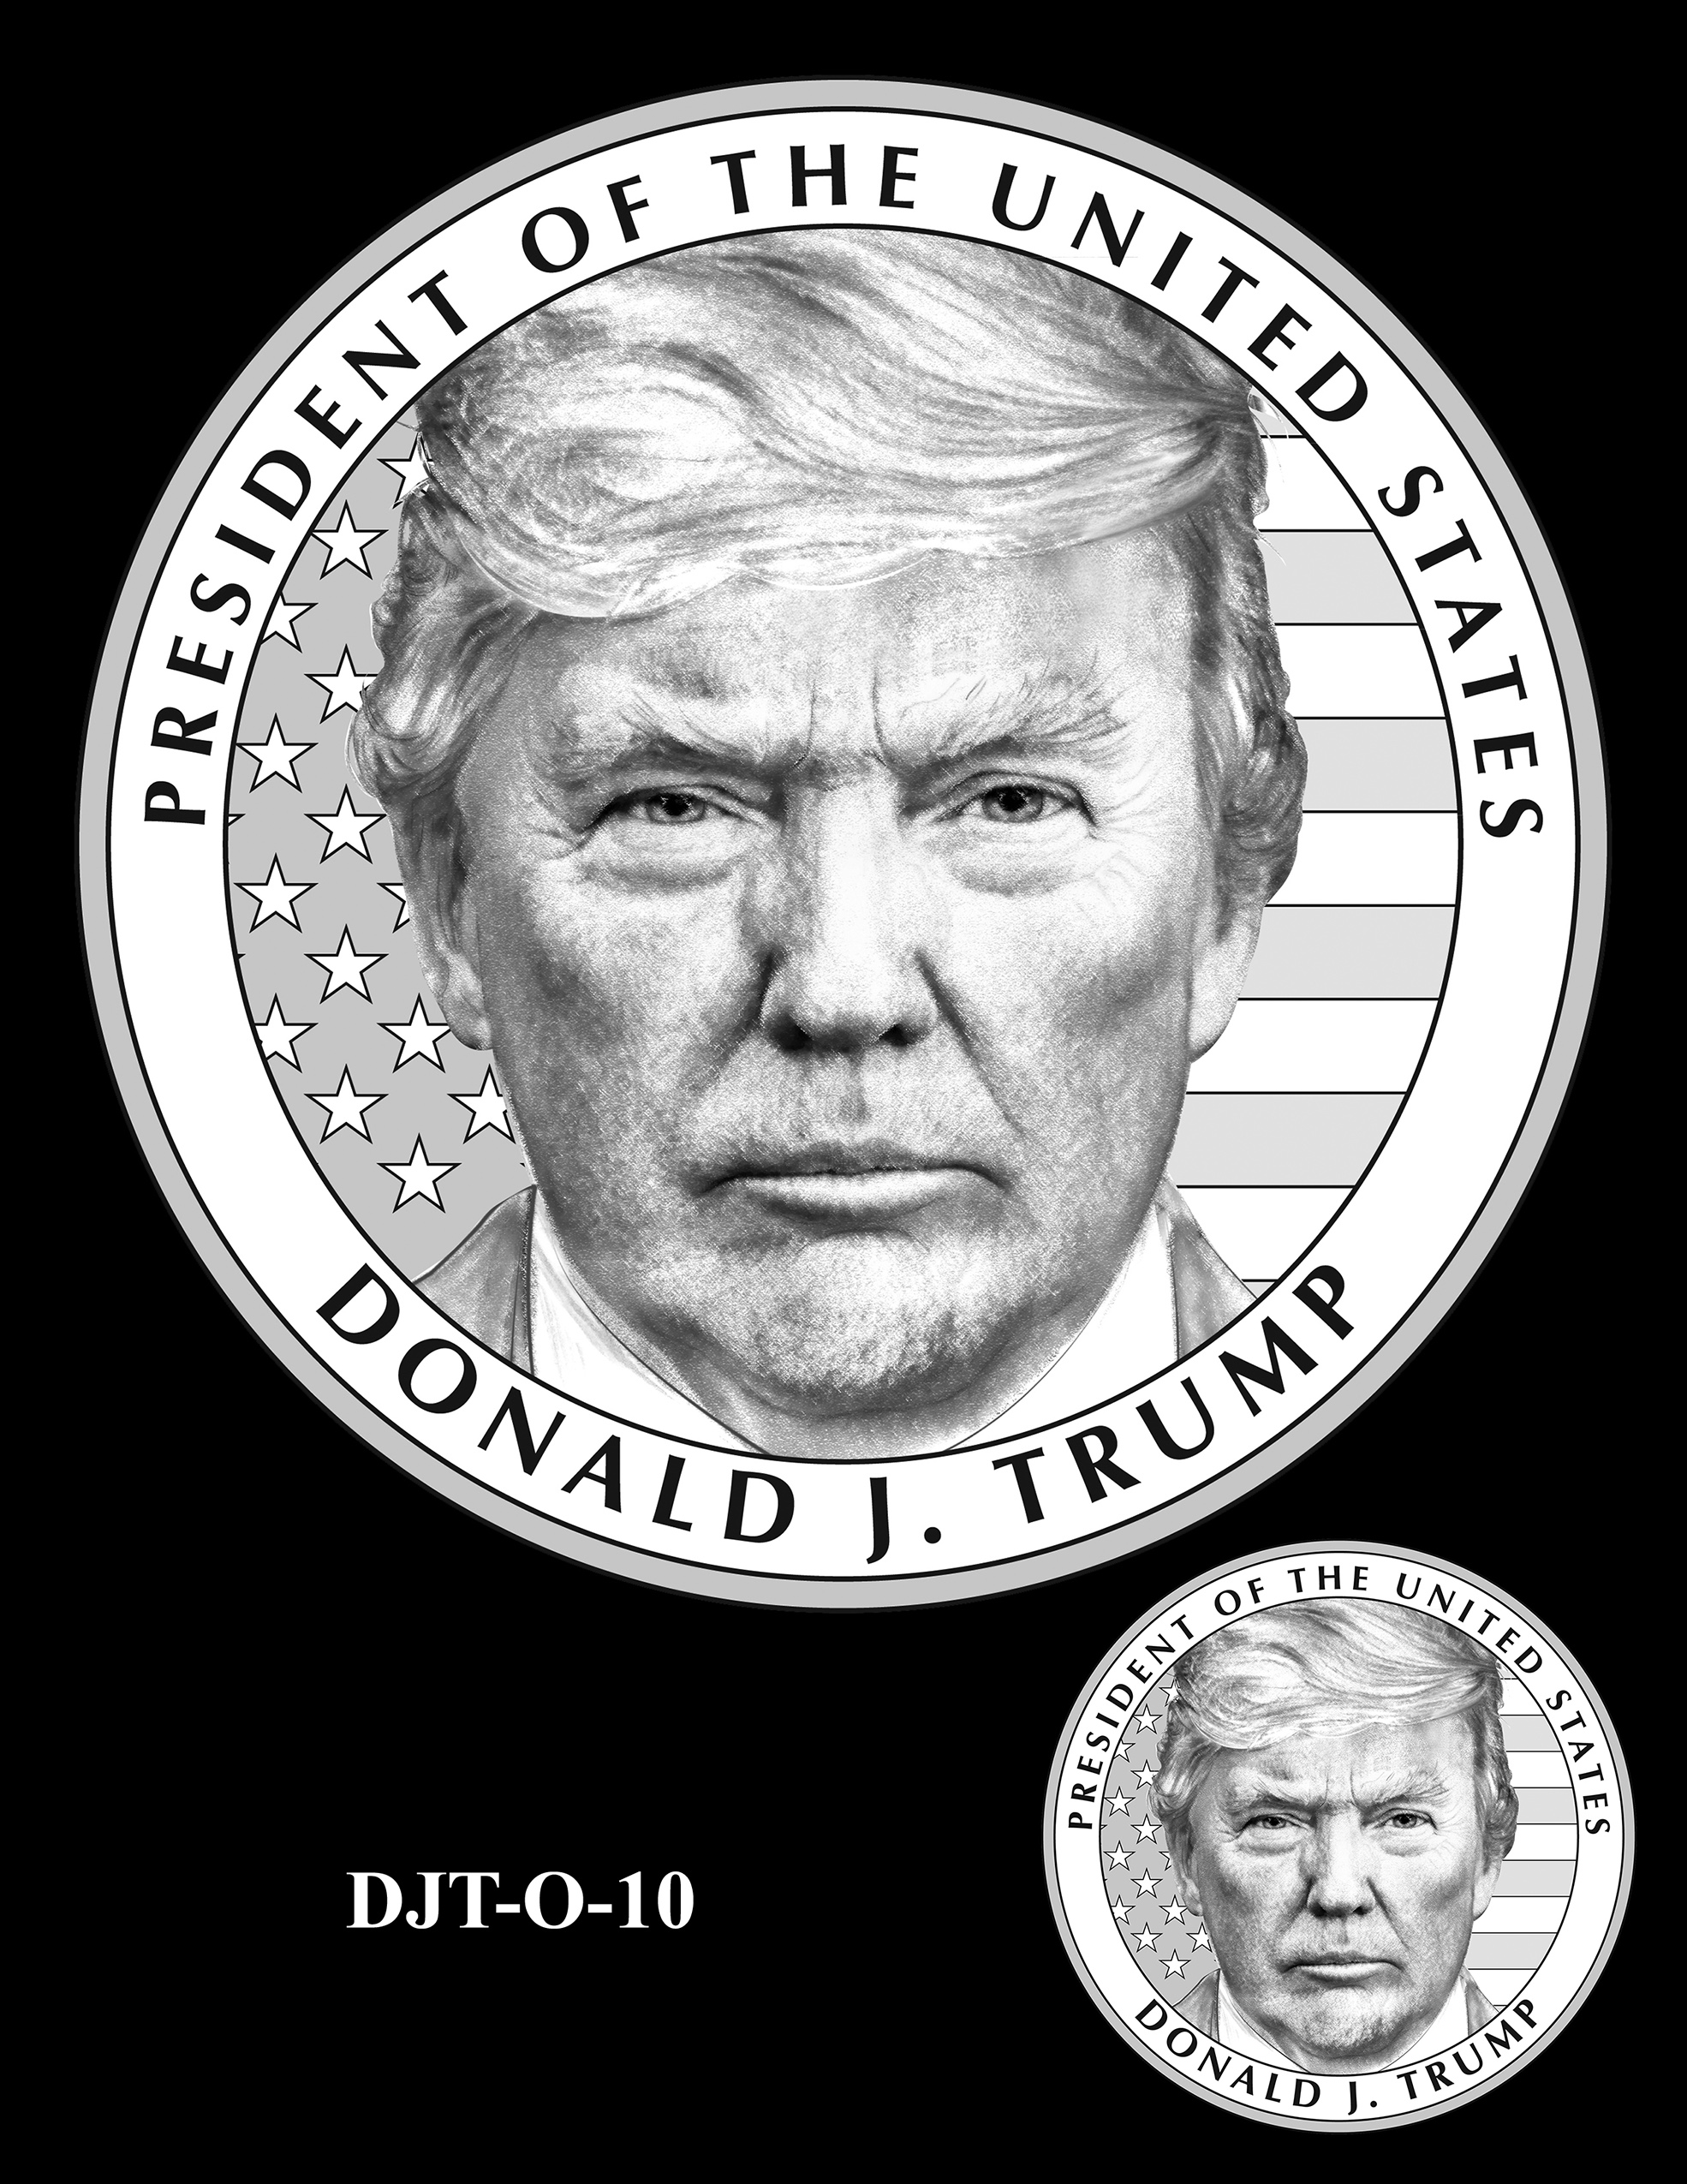 DJT-O-10 -- Donald J. Trump Presidential Medal